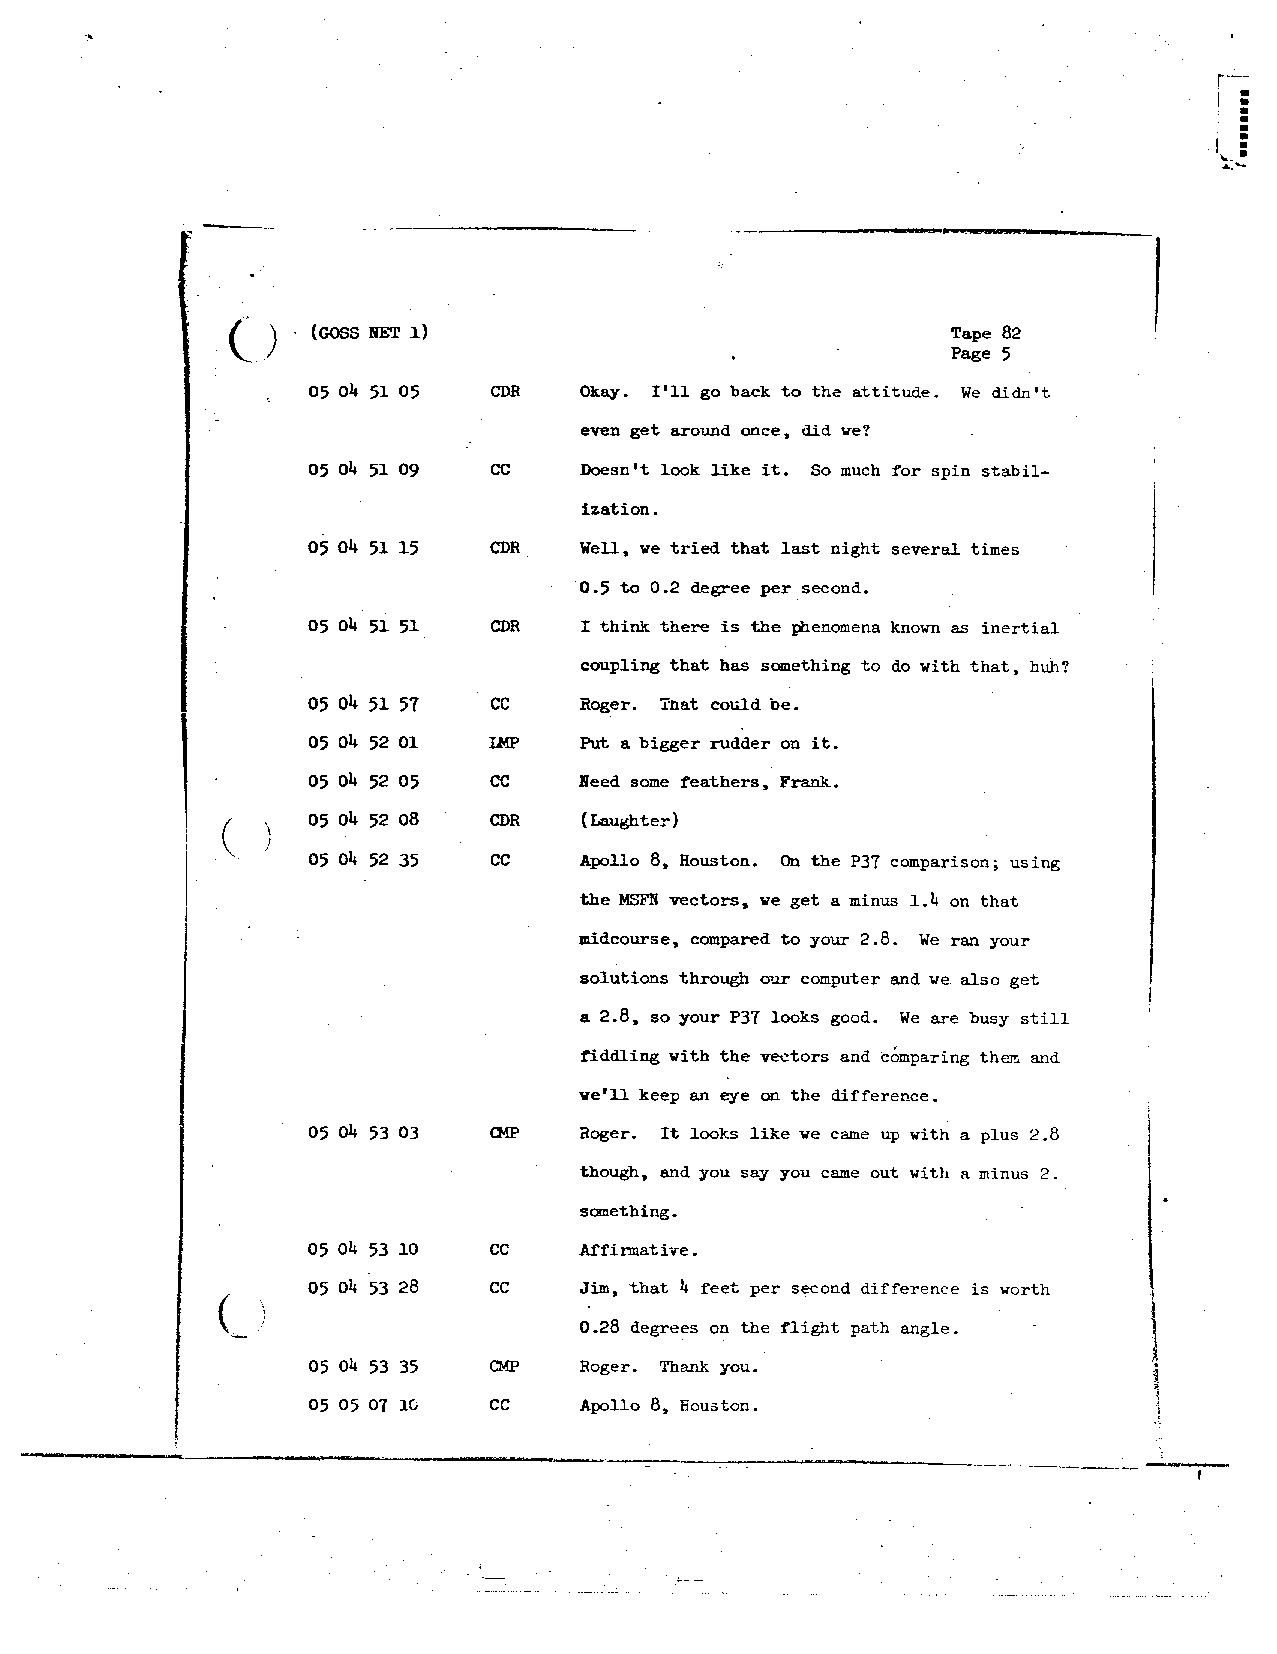 Page 681 of Apollo 8’s original transcript